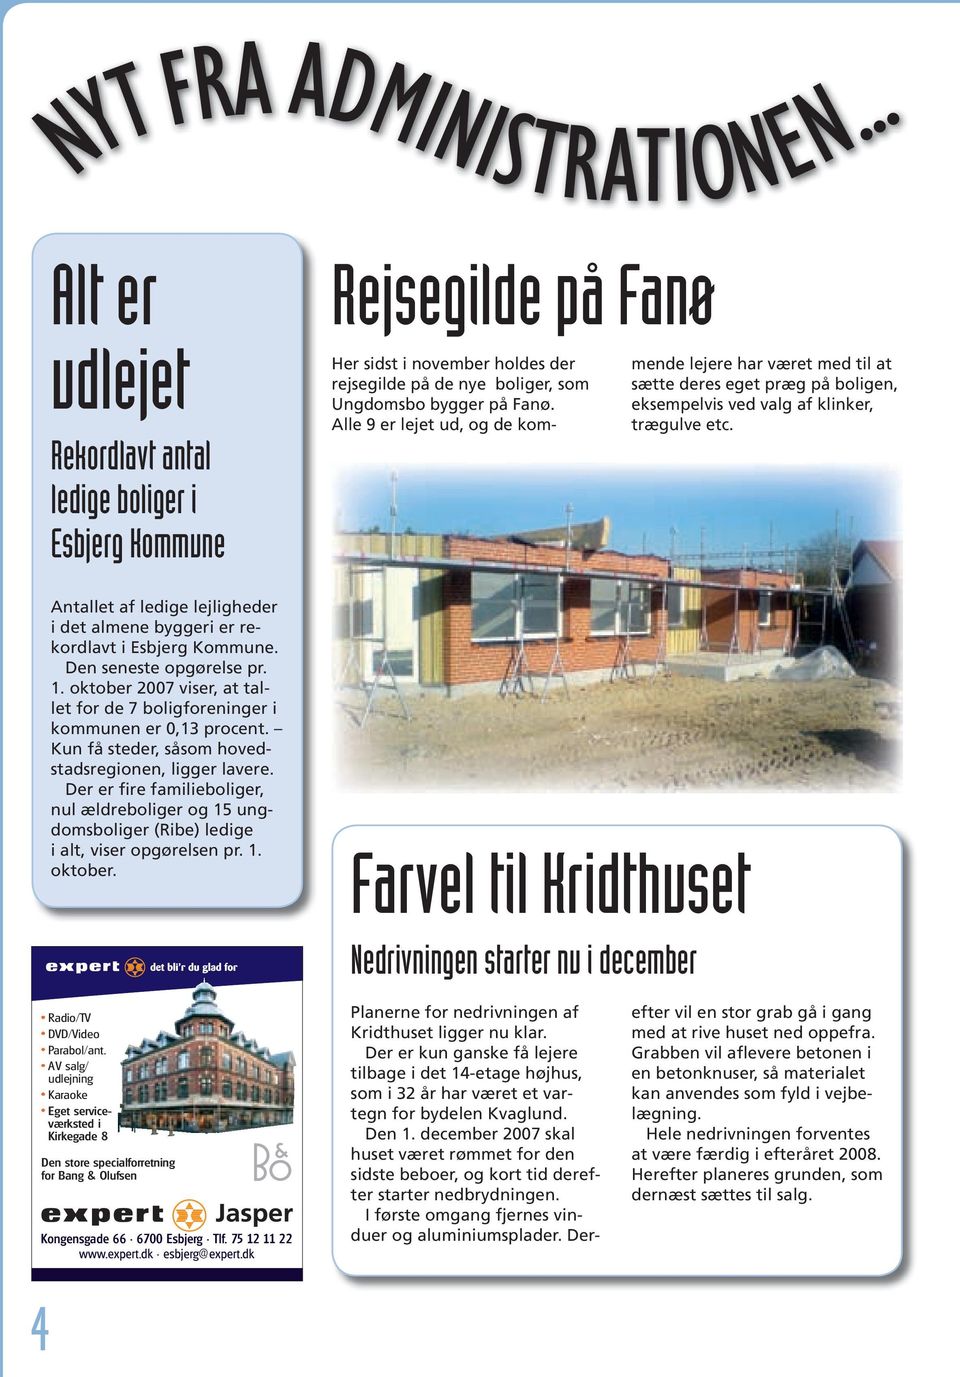 Antallet af ledige lejligheder i det almene byggeri er rekordlavt i Esbjerg Kommune. Den seneste opgørelse pr. 1. oktober 2007 viser, at tallet for de 7 boligforeninger i kommunen er 0,13 procent.